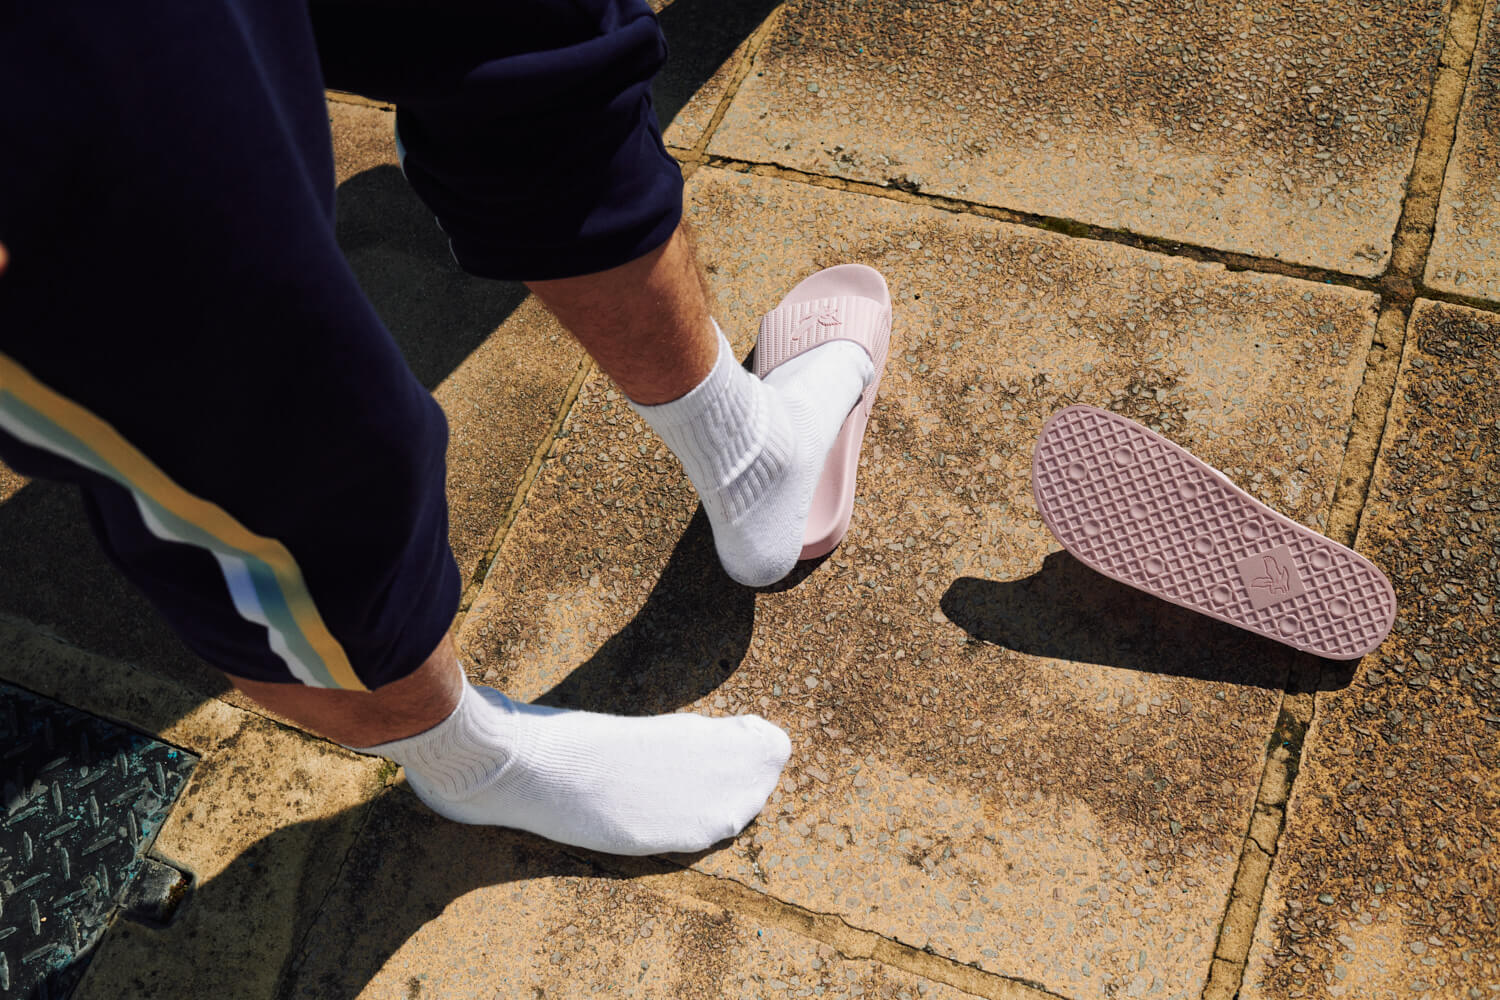  white socks on pavement,  kick off pink Lyle and Scott  